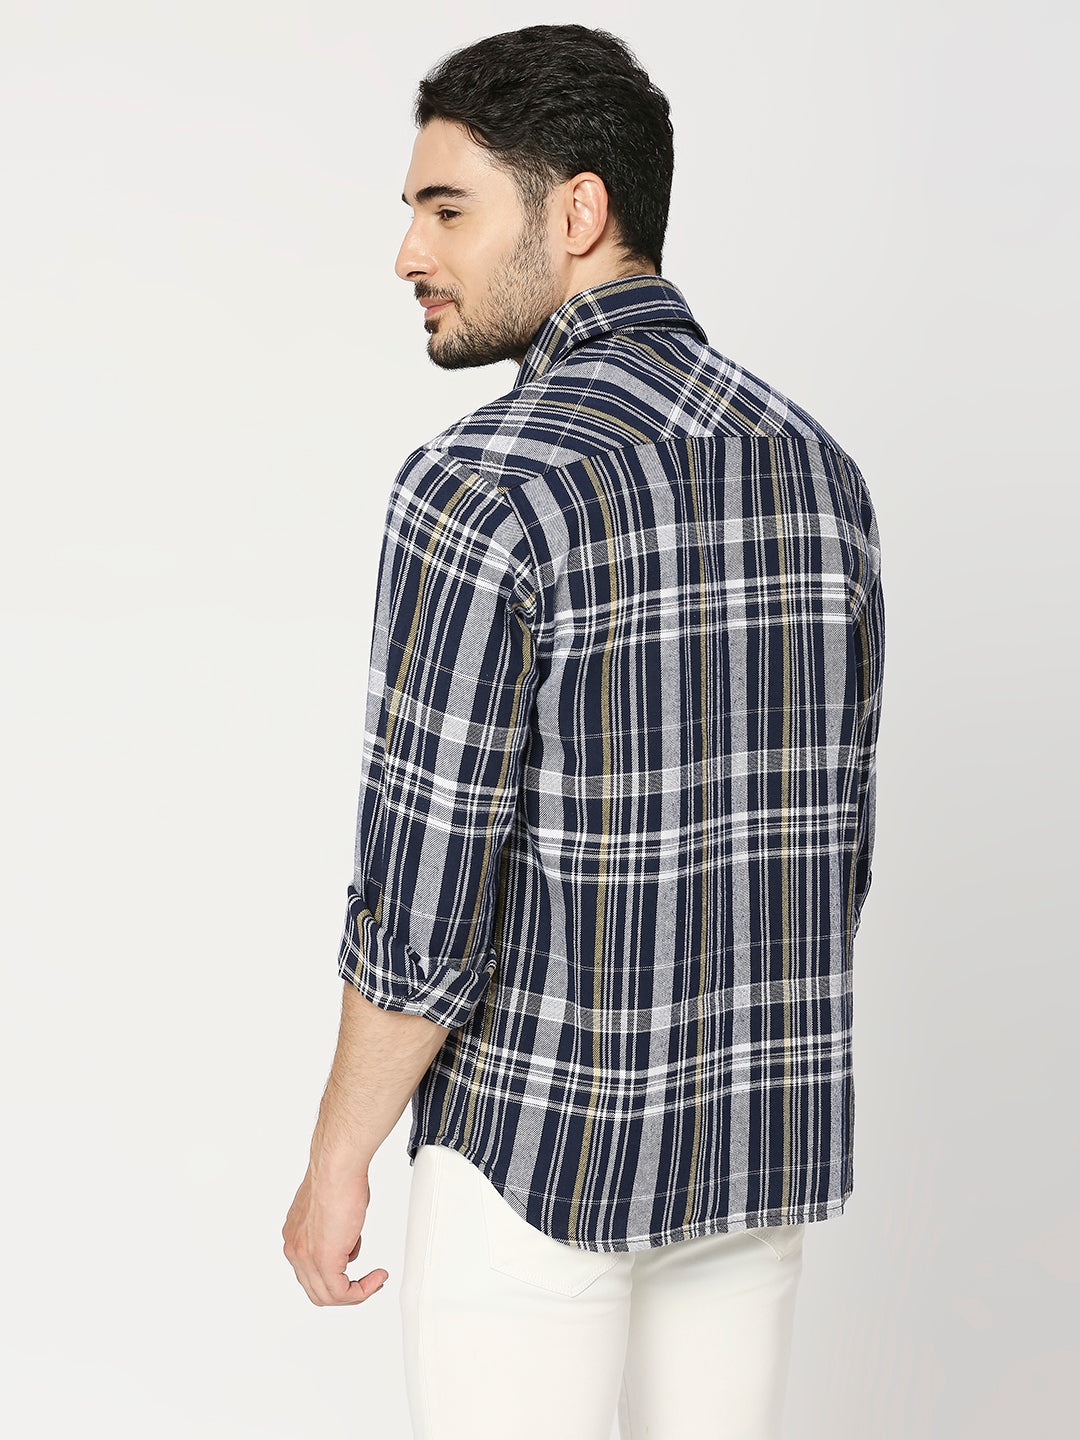 Buy BLAMBLACK Men's Checks Regular Fit Full Sleeves Spread Collar Shirt